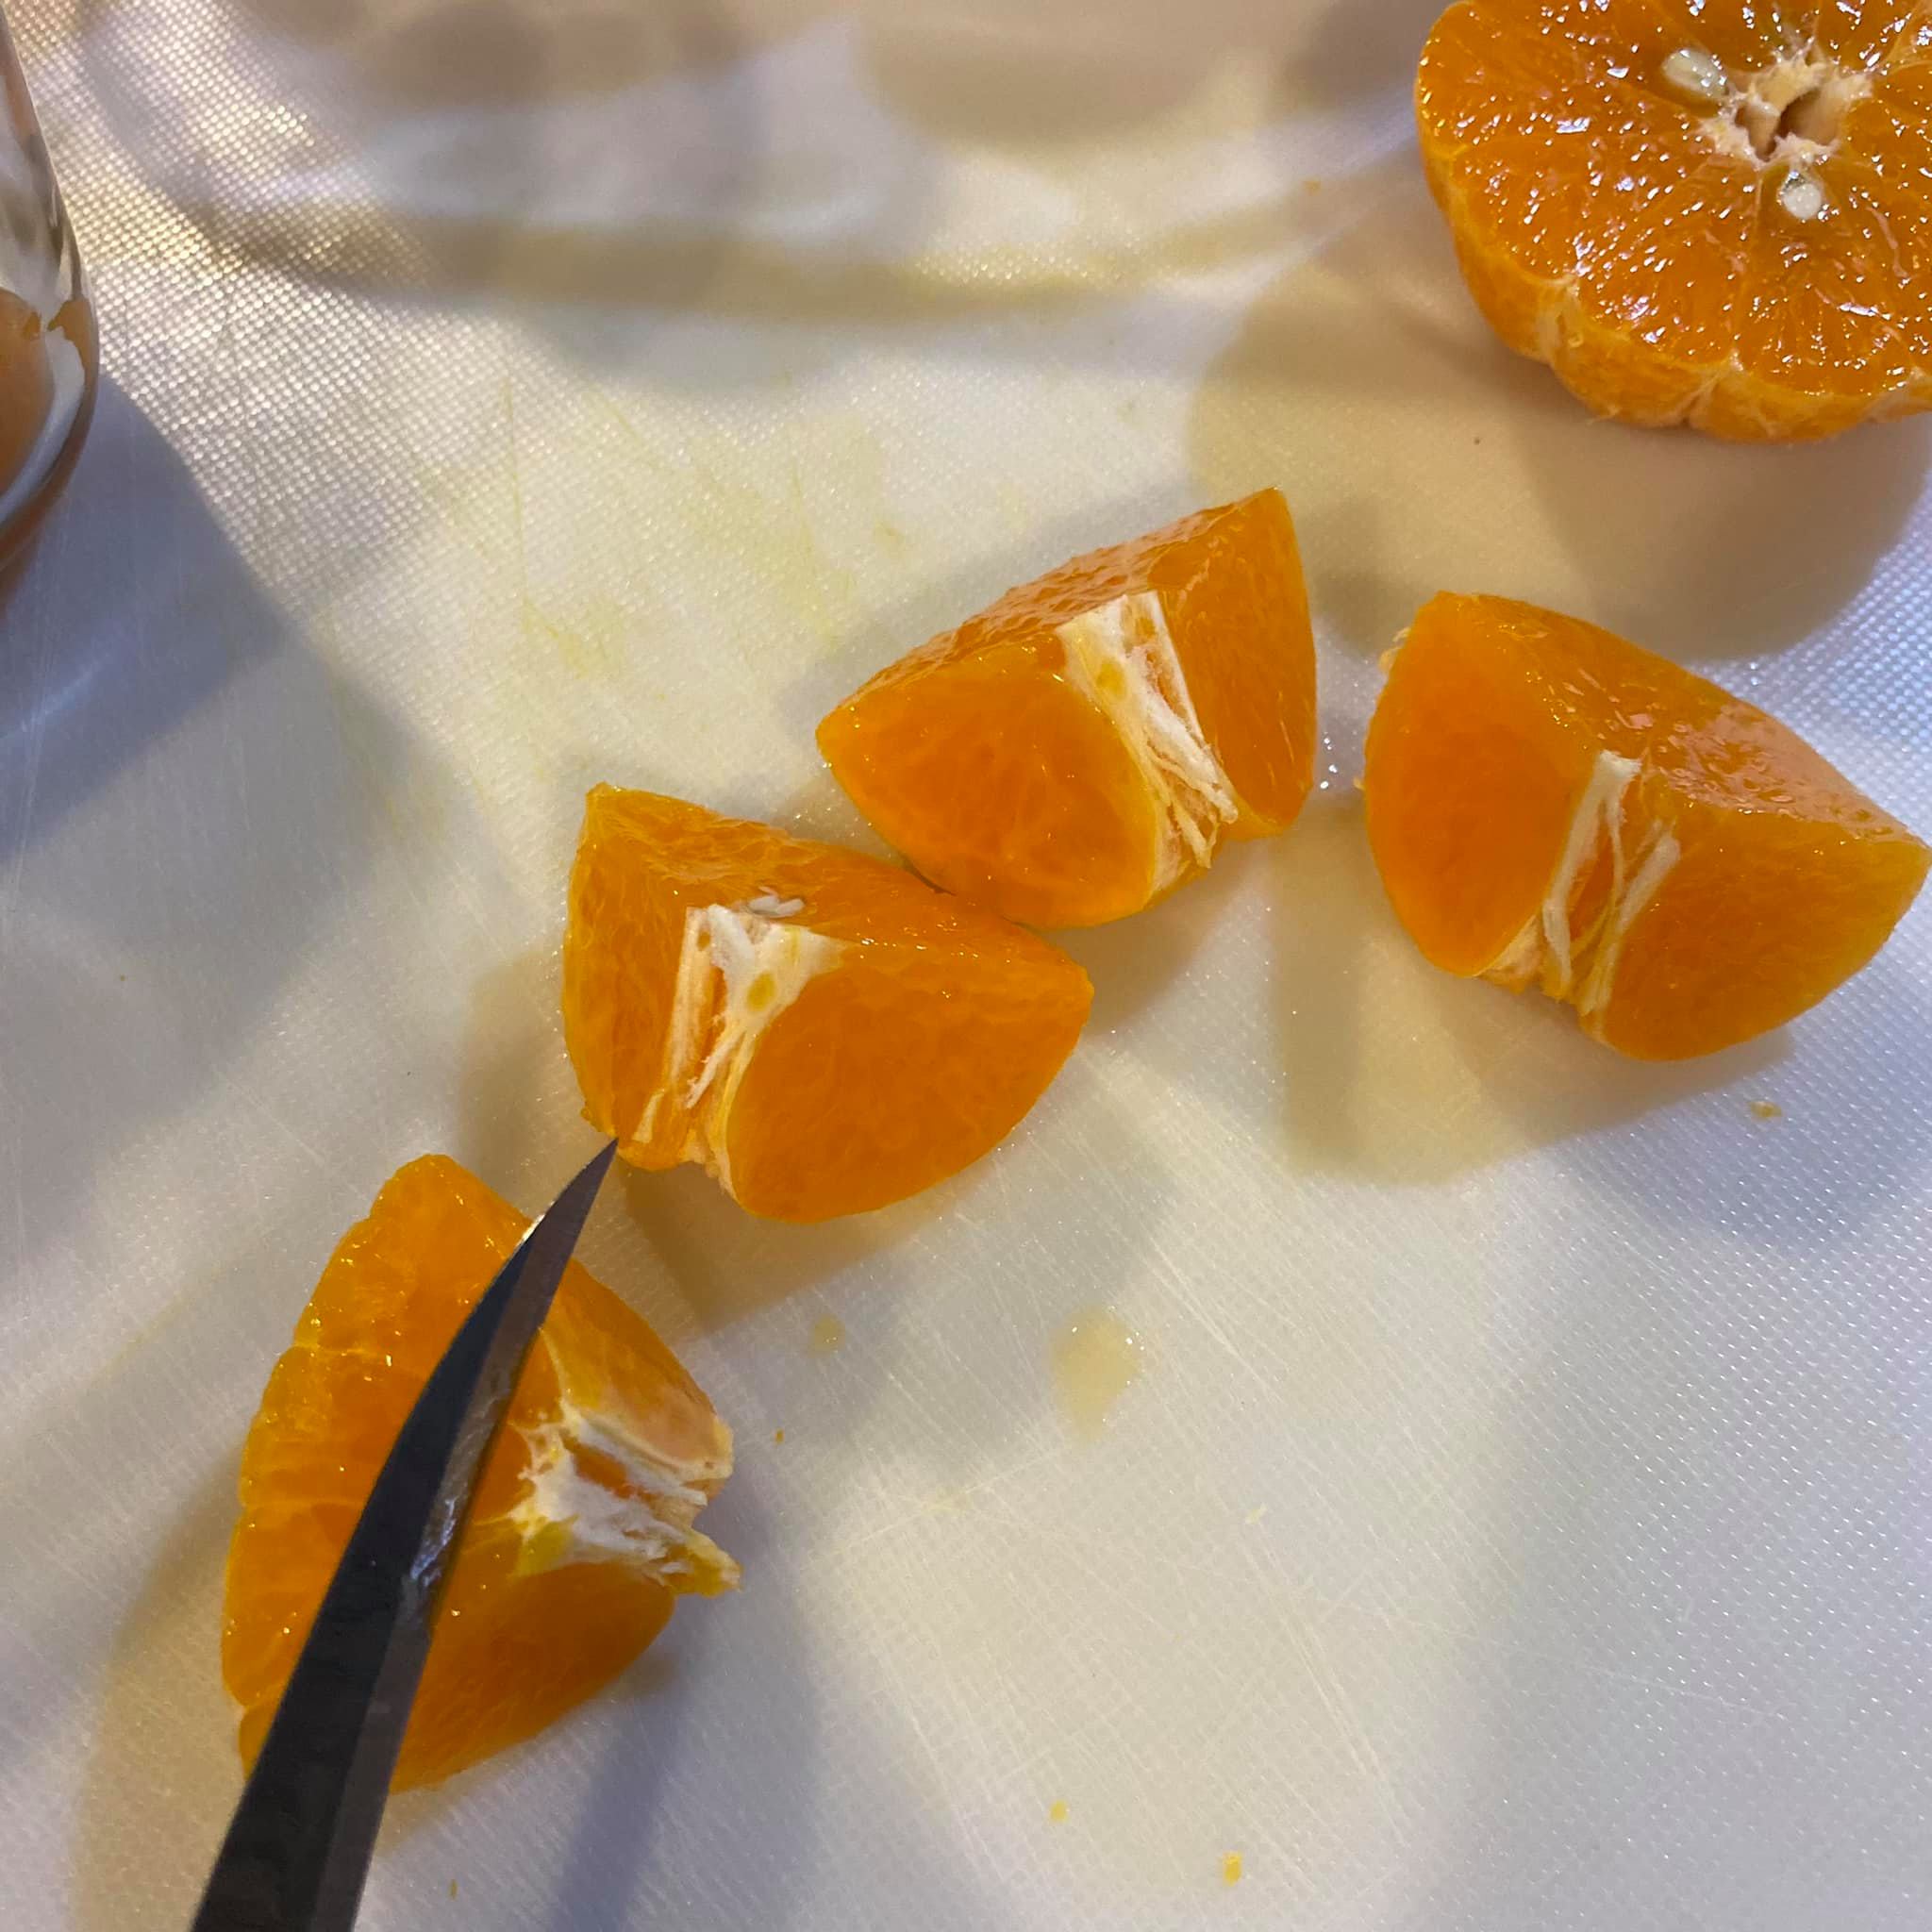 ปอกส้มยังไงให้น่าทาน6